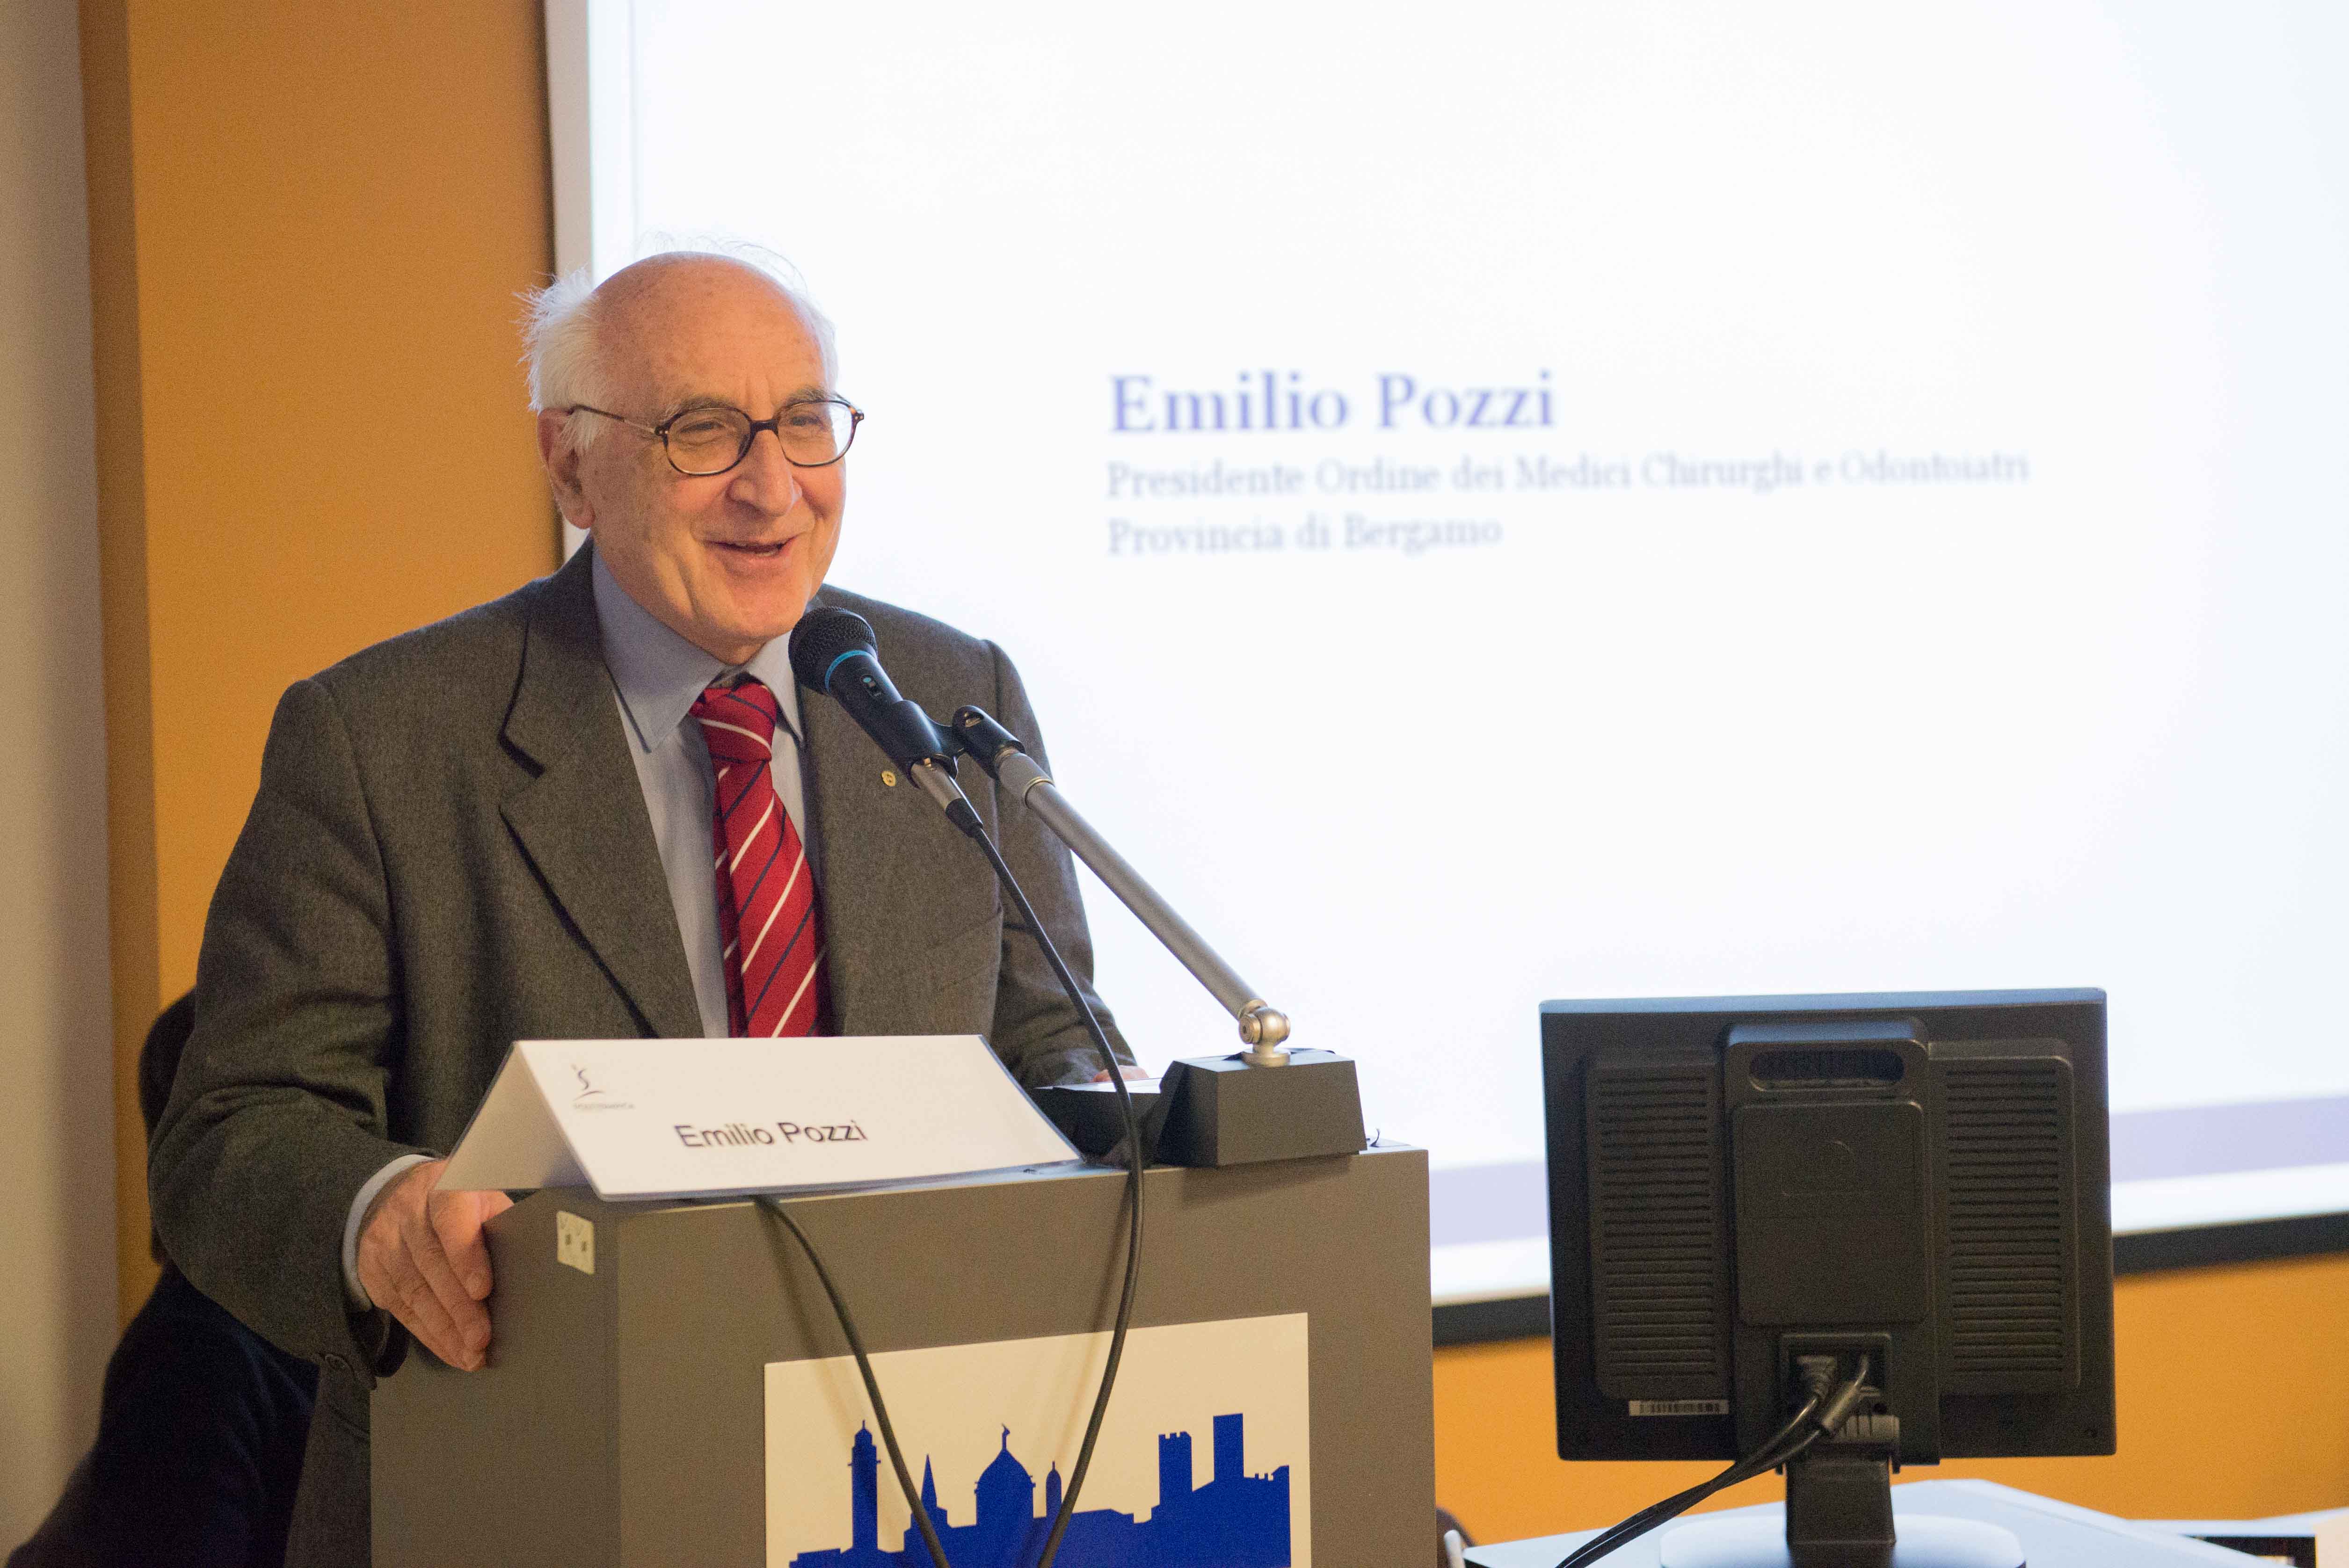 3.3.2015 - Interviene Emilio Pozzi, Presidente Ordine dei Medici Bergamo